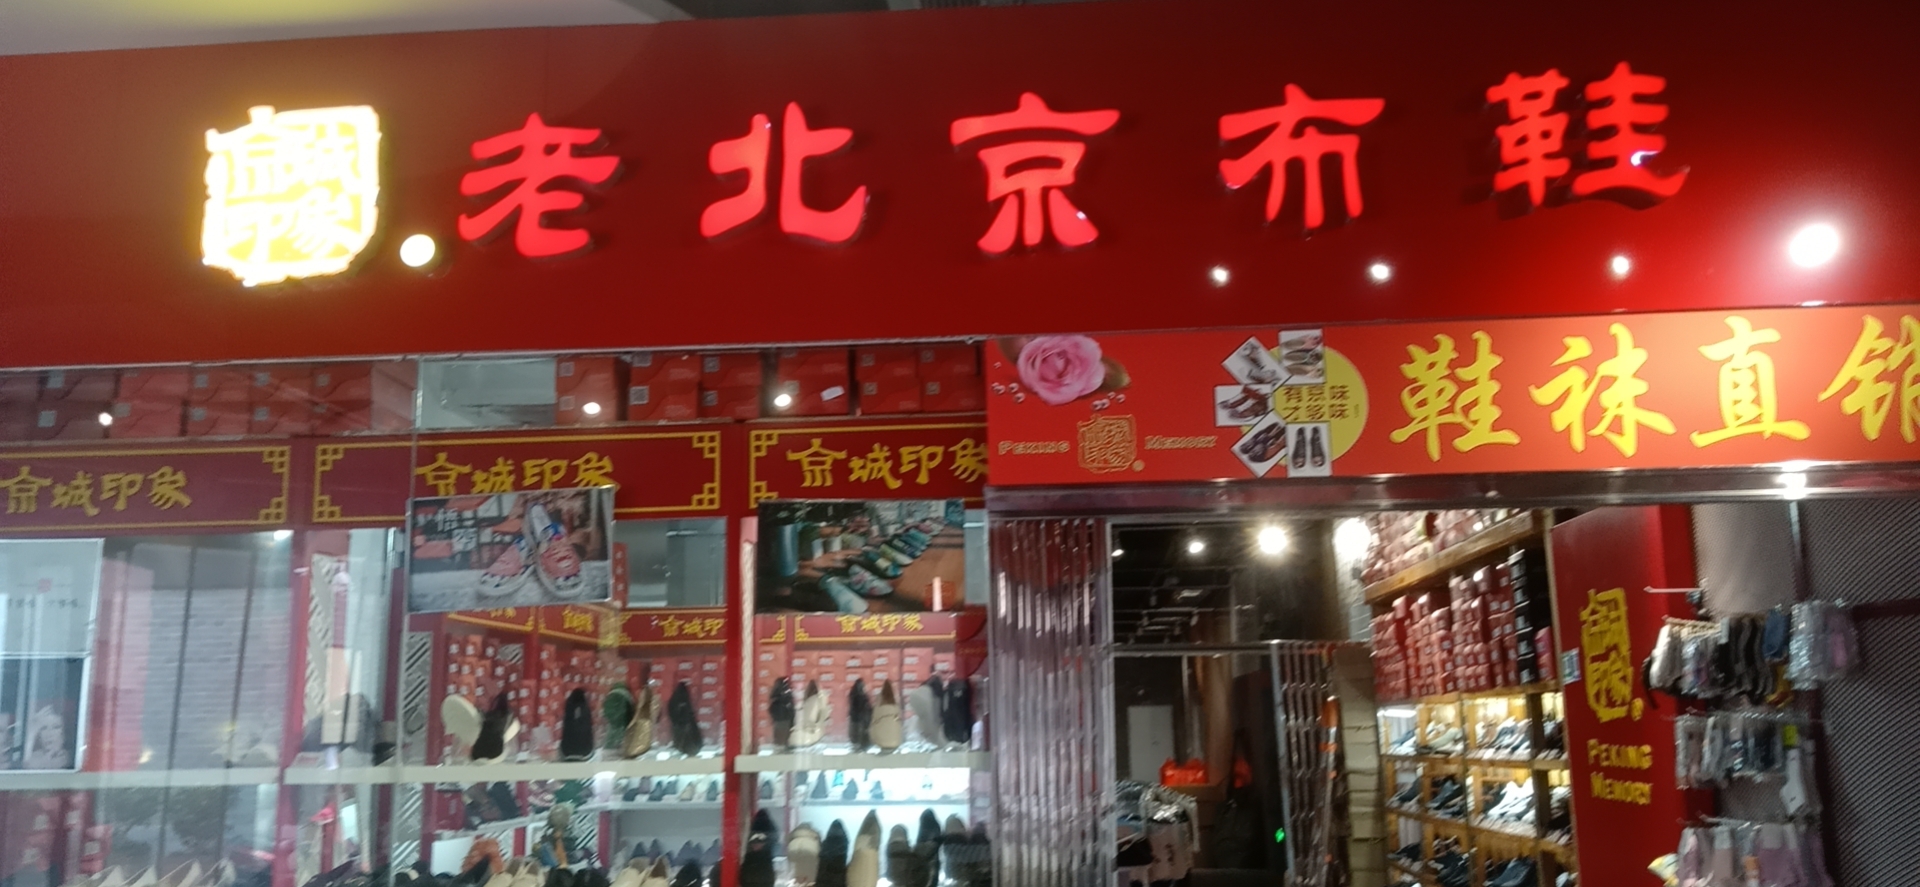 贺：京城印象老北京布鞋加盟店安徽合肥孔老板盛大开业！